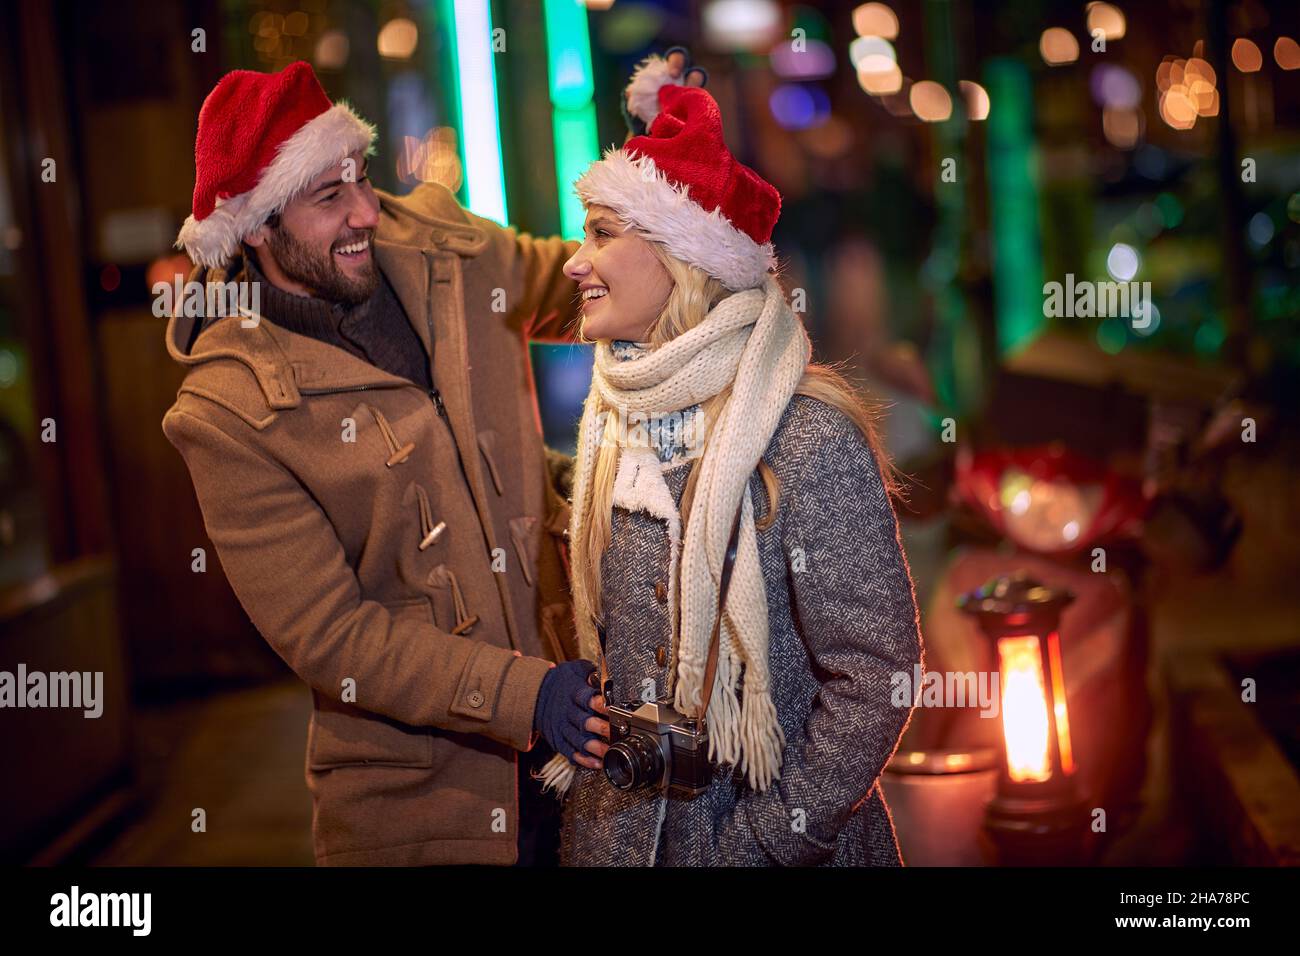 Glückliches Paar, das gemeinsam glückliche Momente teilt; Weihnachtsfreuden-Konzept Stockfoto